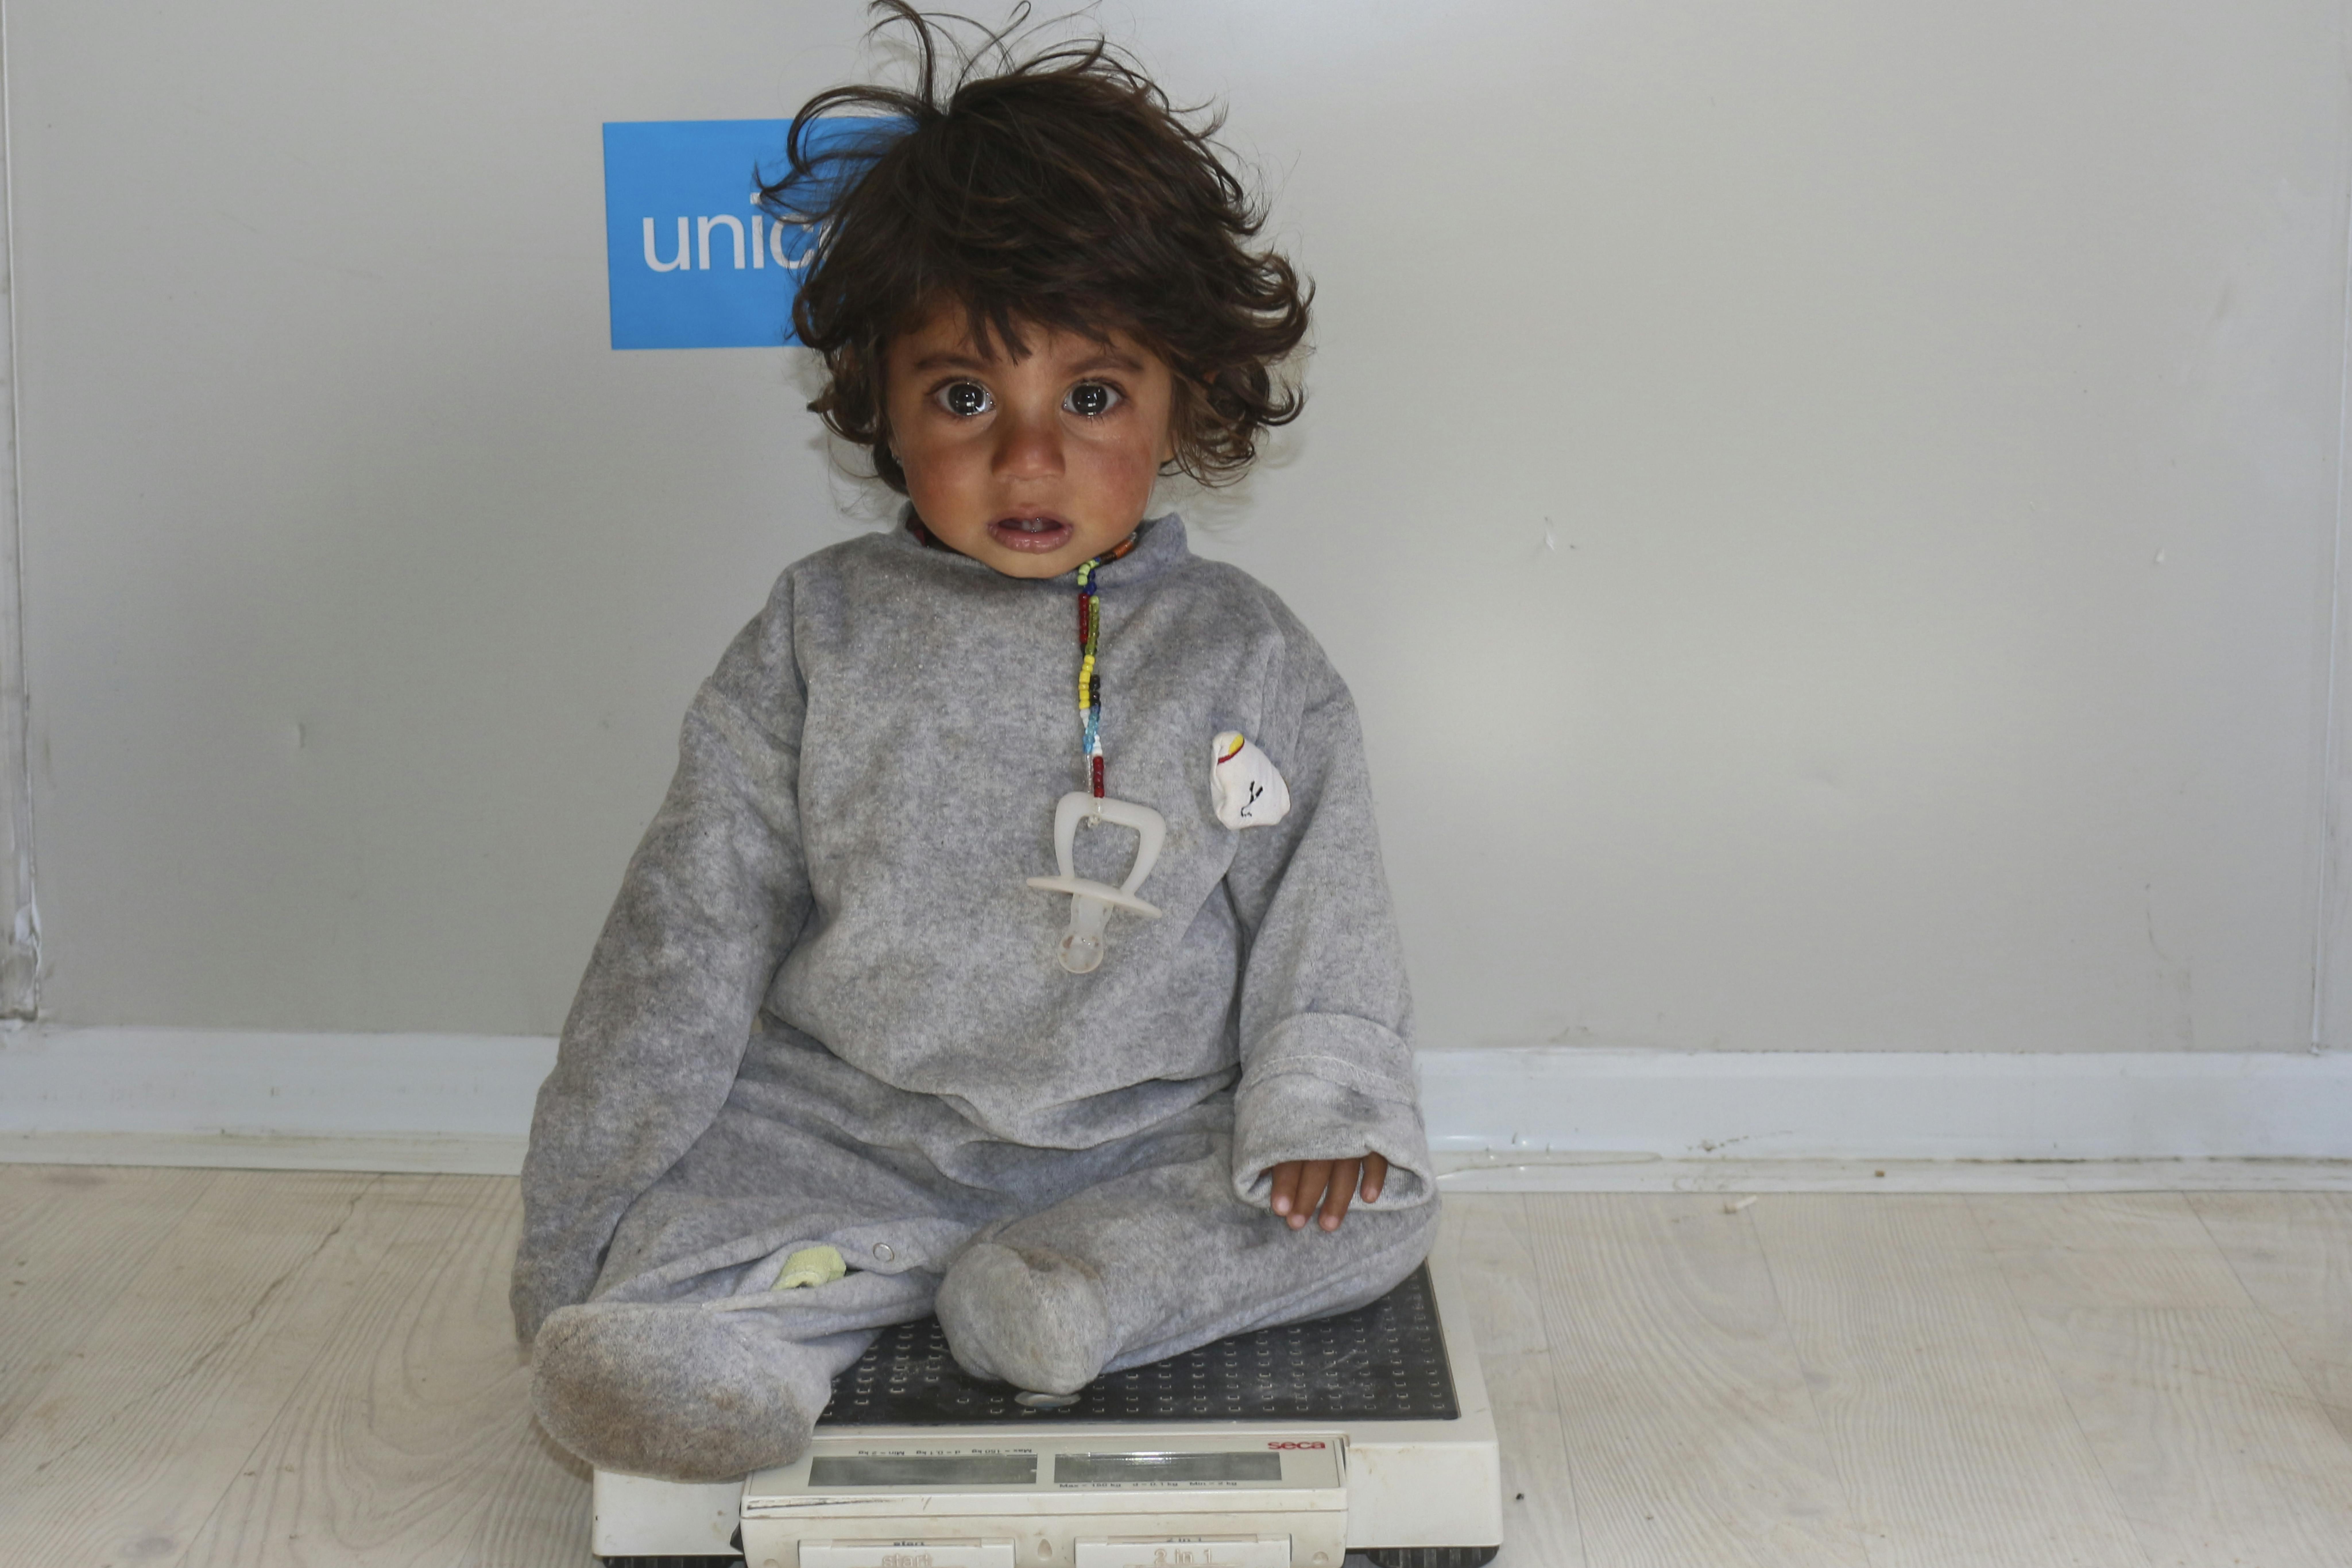 Siria: Mahmoud, 14 mesi, vive nel campo profughi di Al-Hol. Sta indossando un braccialetto speciale MUAC, che serve per determinare il grado di malnutrizione dei bambini. Come lui, altri 3,7 milioni di bambini siriani hanno sviluppato forme di malnutrizione a causa delle guerra che da 13 anni devasta il paese. L'UNICEF è sul campo per curarli dalla malnutrizione con alimenti terapeutici e interventi di prevenzione